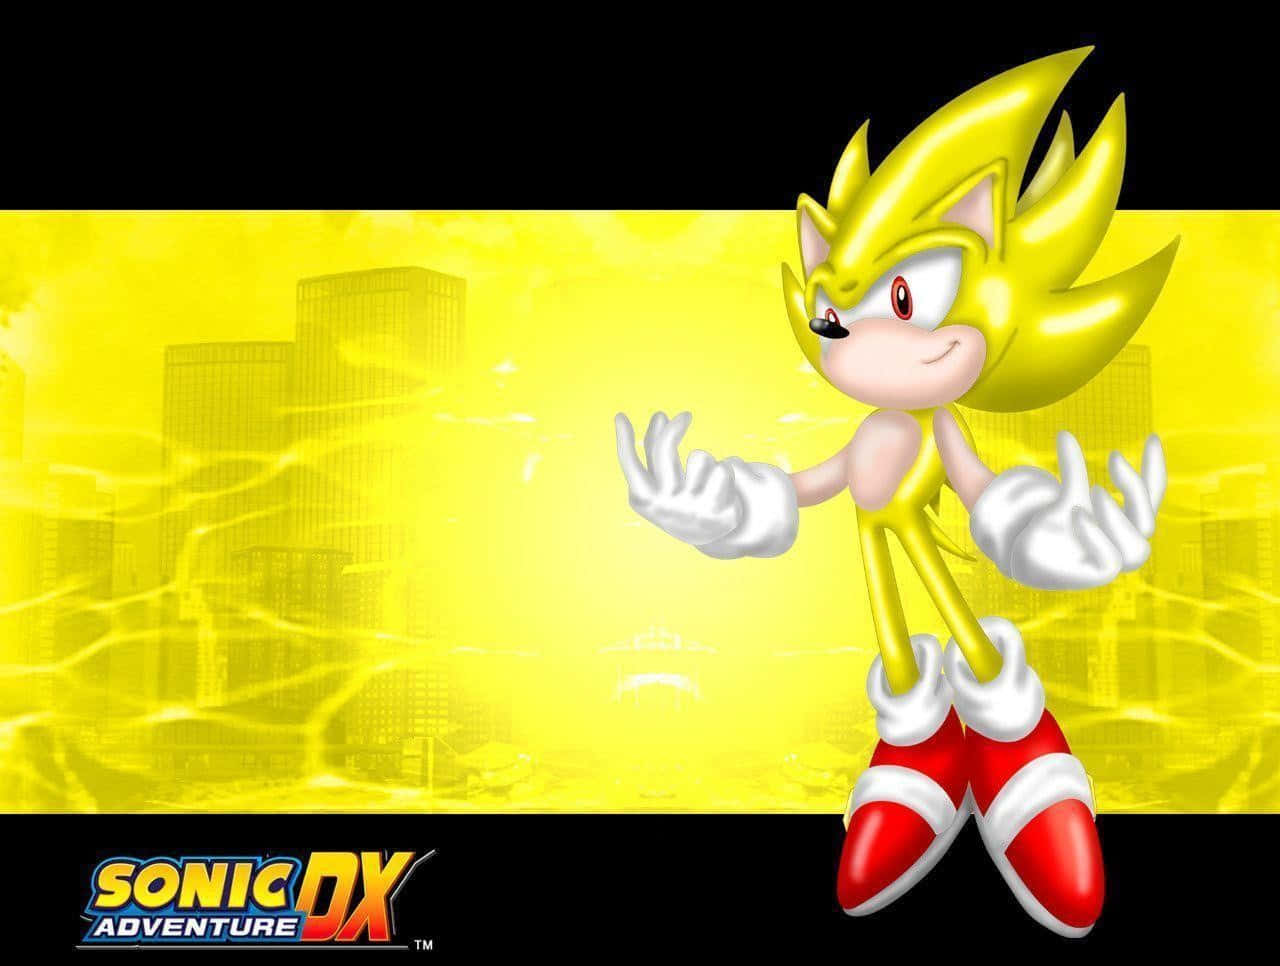 Velocitàspaziale - Super Sonic